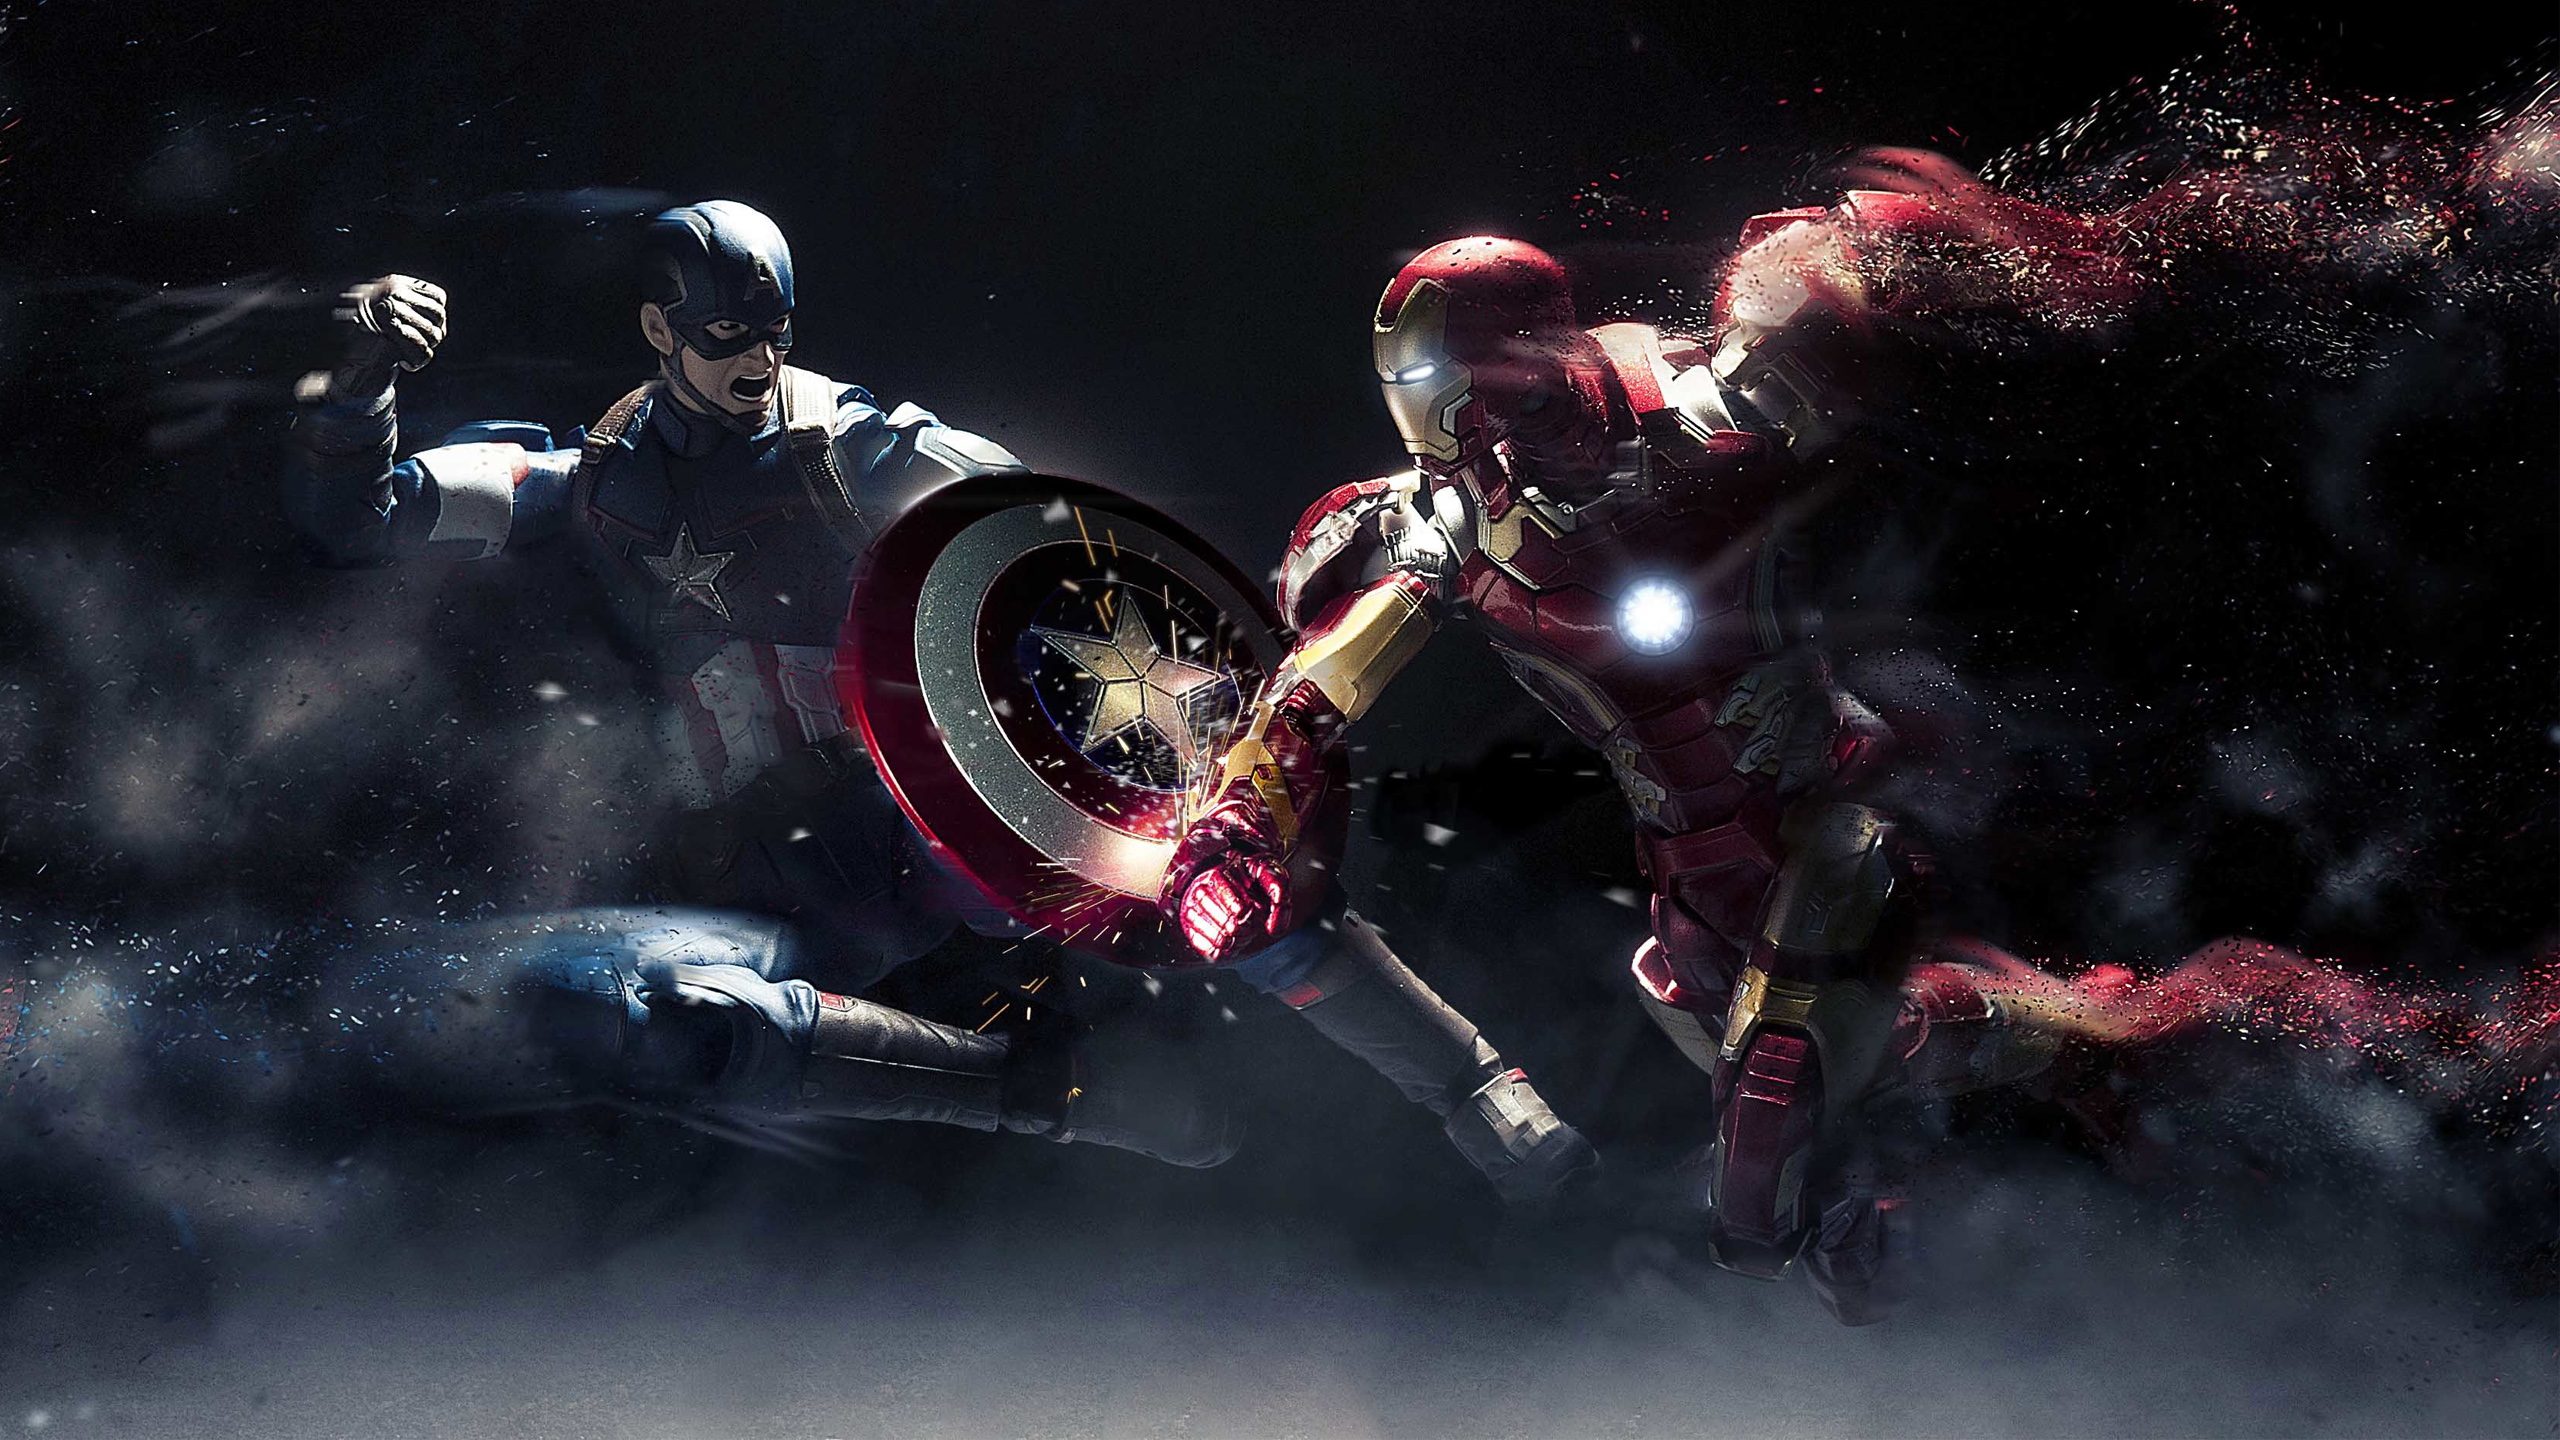 Обои Железный человек, Капитан Америка, темнота, космос, пространство в раз...